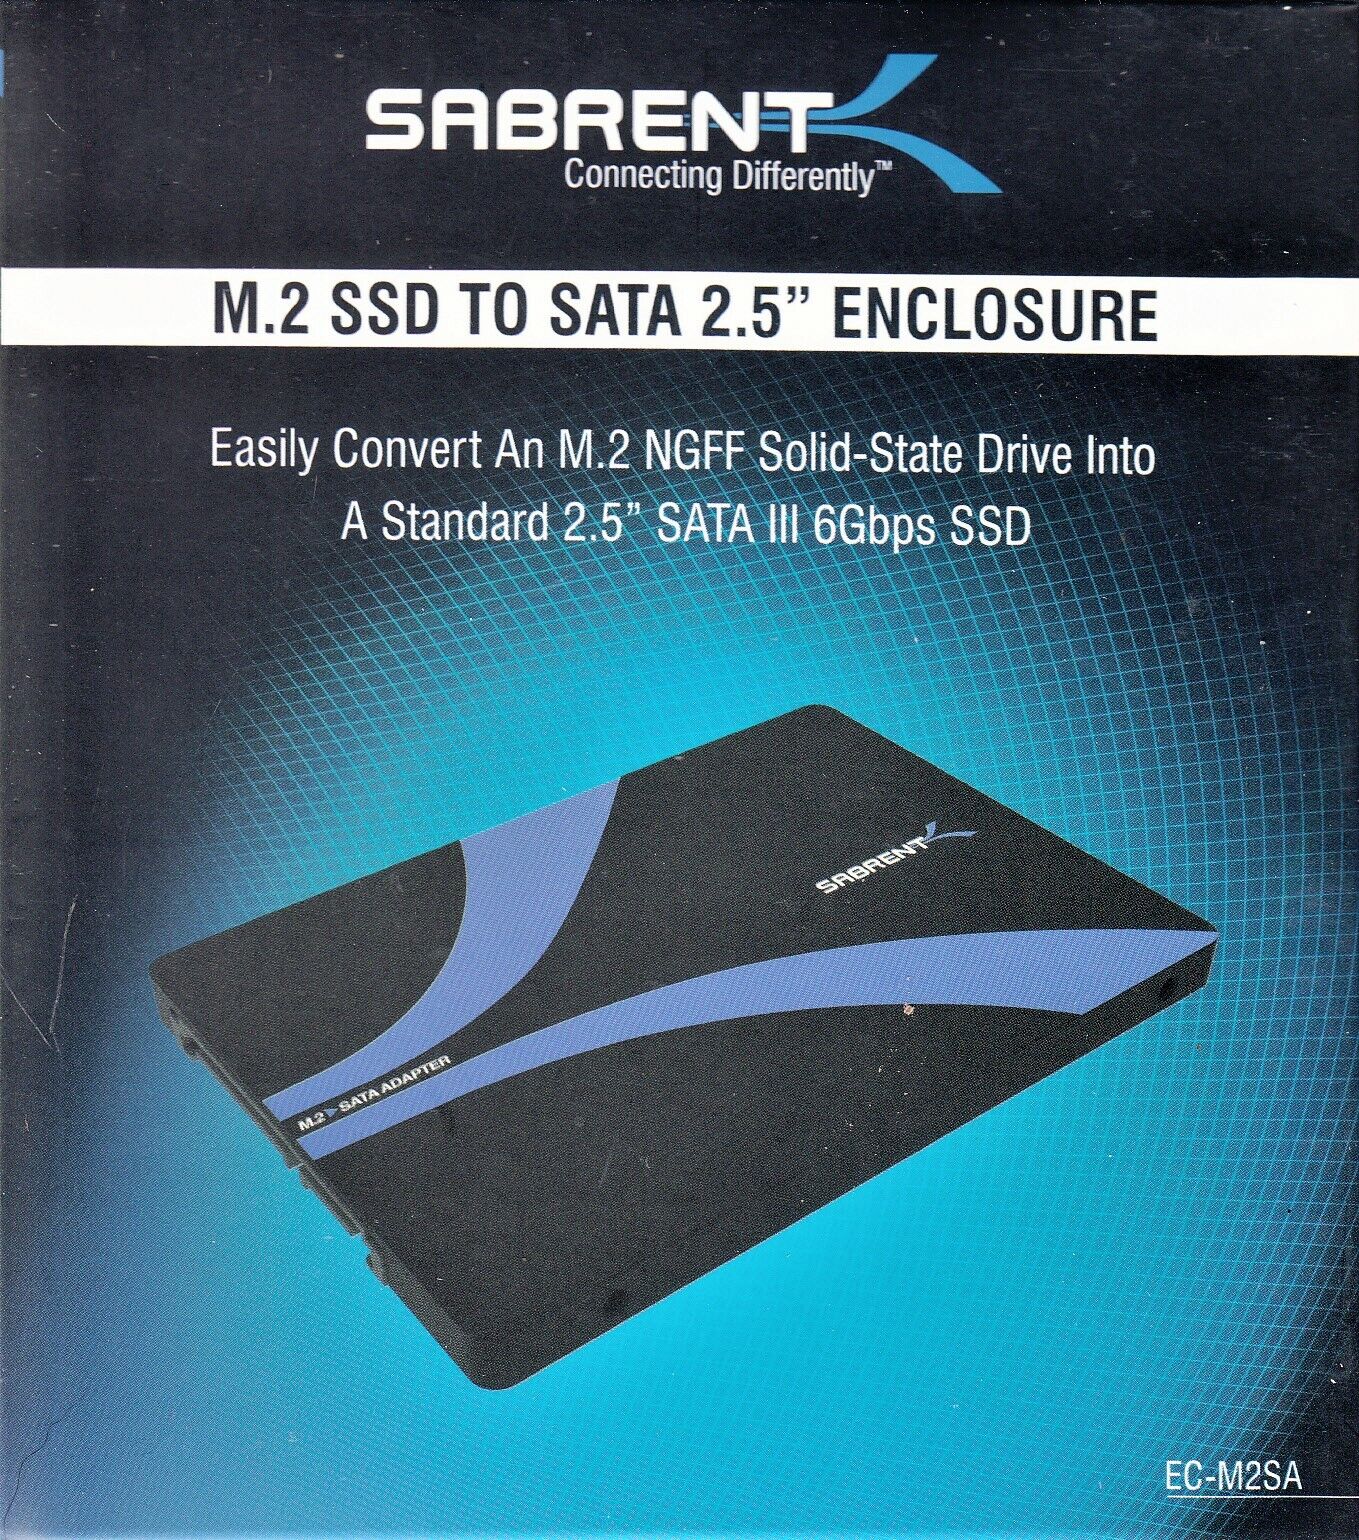 SABRENT M.2 SSD TO SATA 2.5" ENCLOSURE SATA INTERFACE - EC-M2SA - NEW AND SEALED